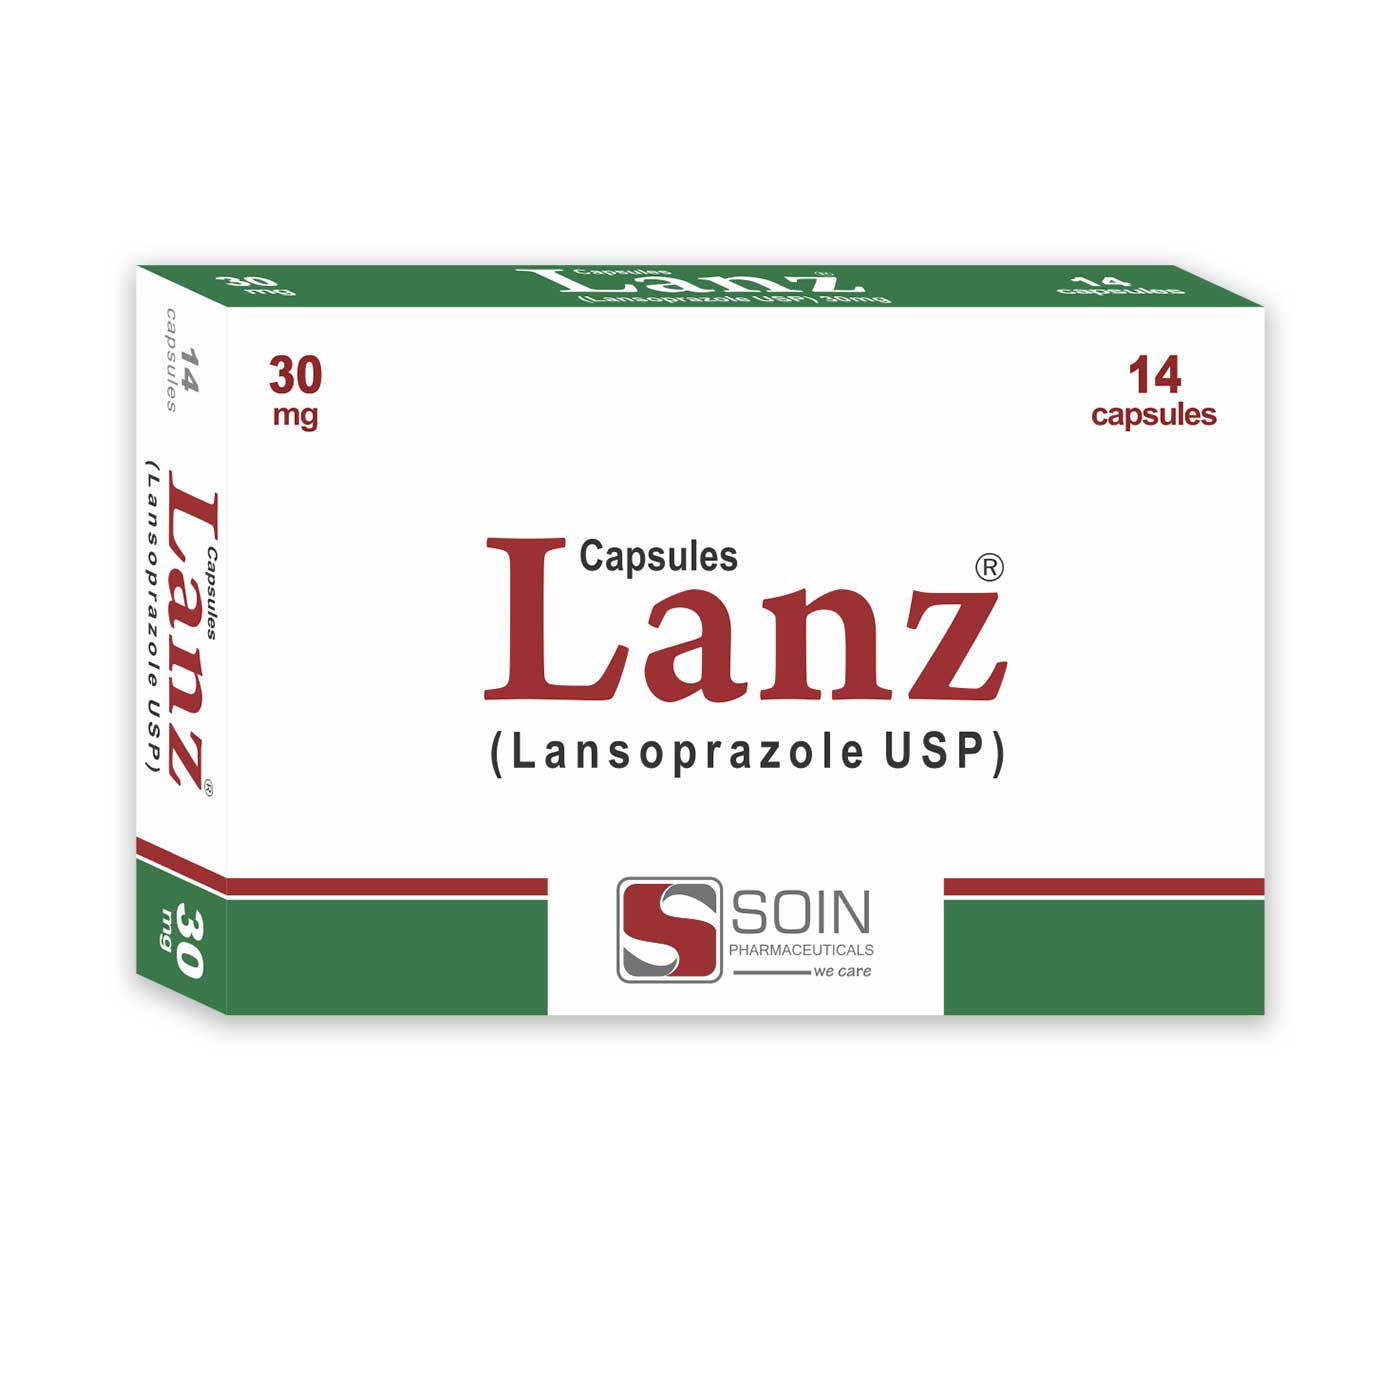 兰索拉唑(lansoprazole)达克普隆费用多少钱